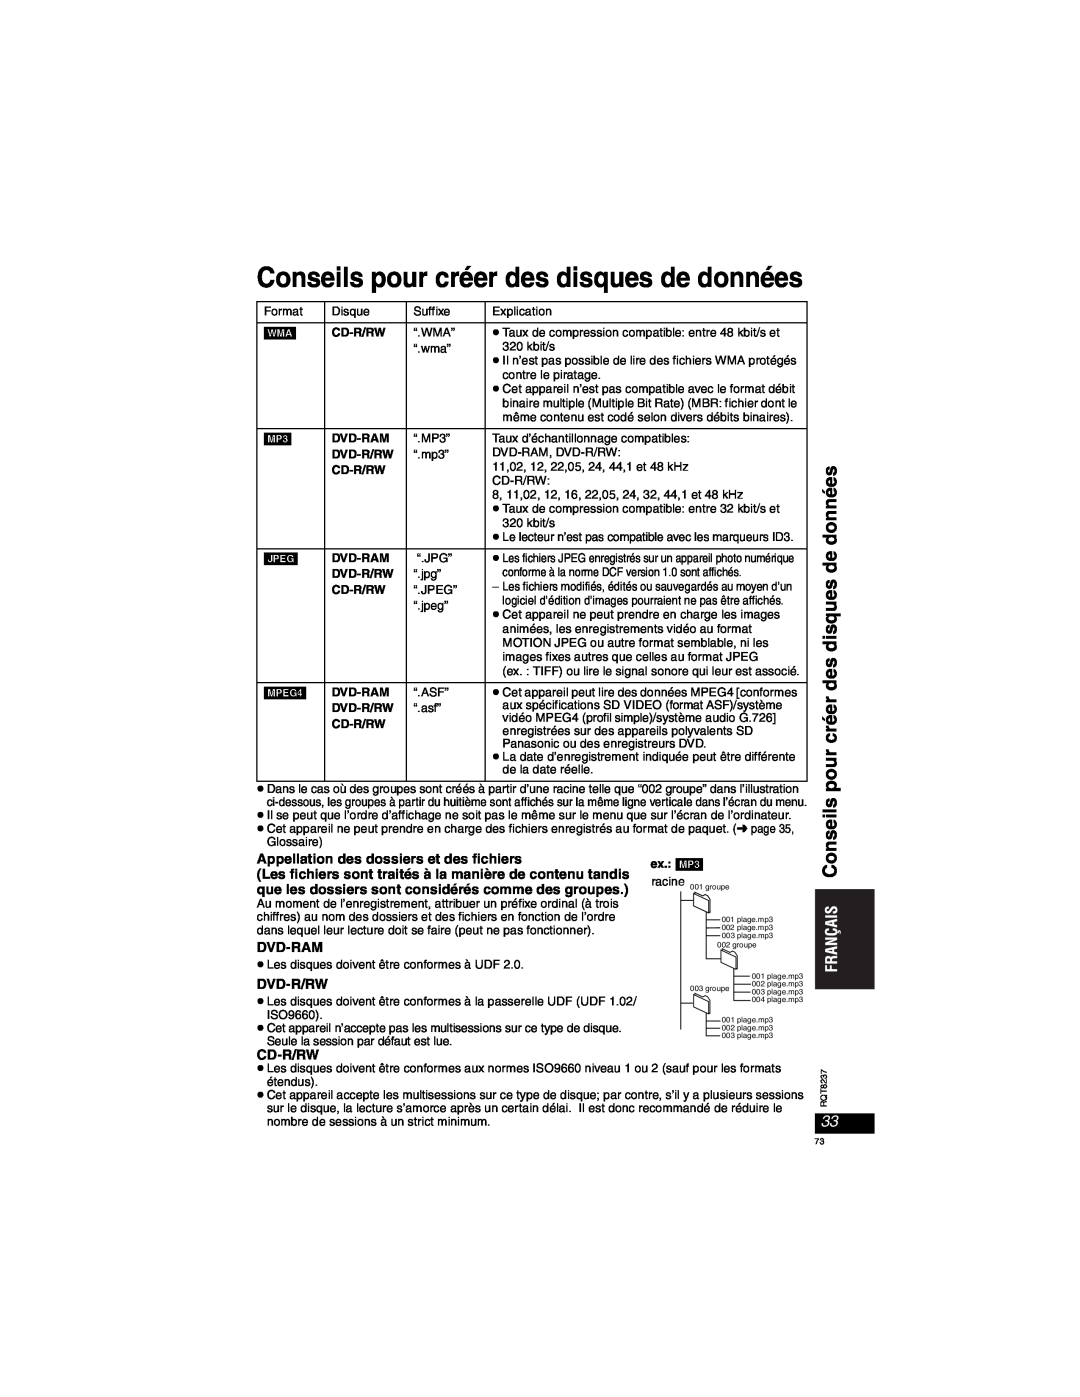 Panasonic DVD-LX97 Conseils pour créer des disques de données, Appellation des dossiers et des fichiers, Dvd-Ram, Dvd-R/Rw 